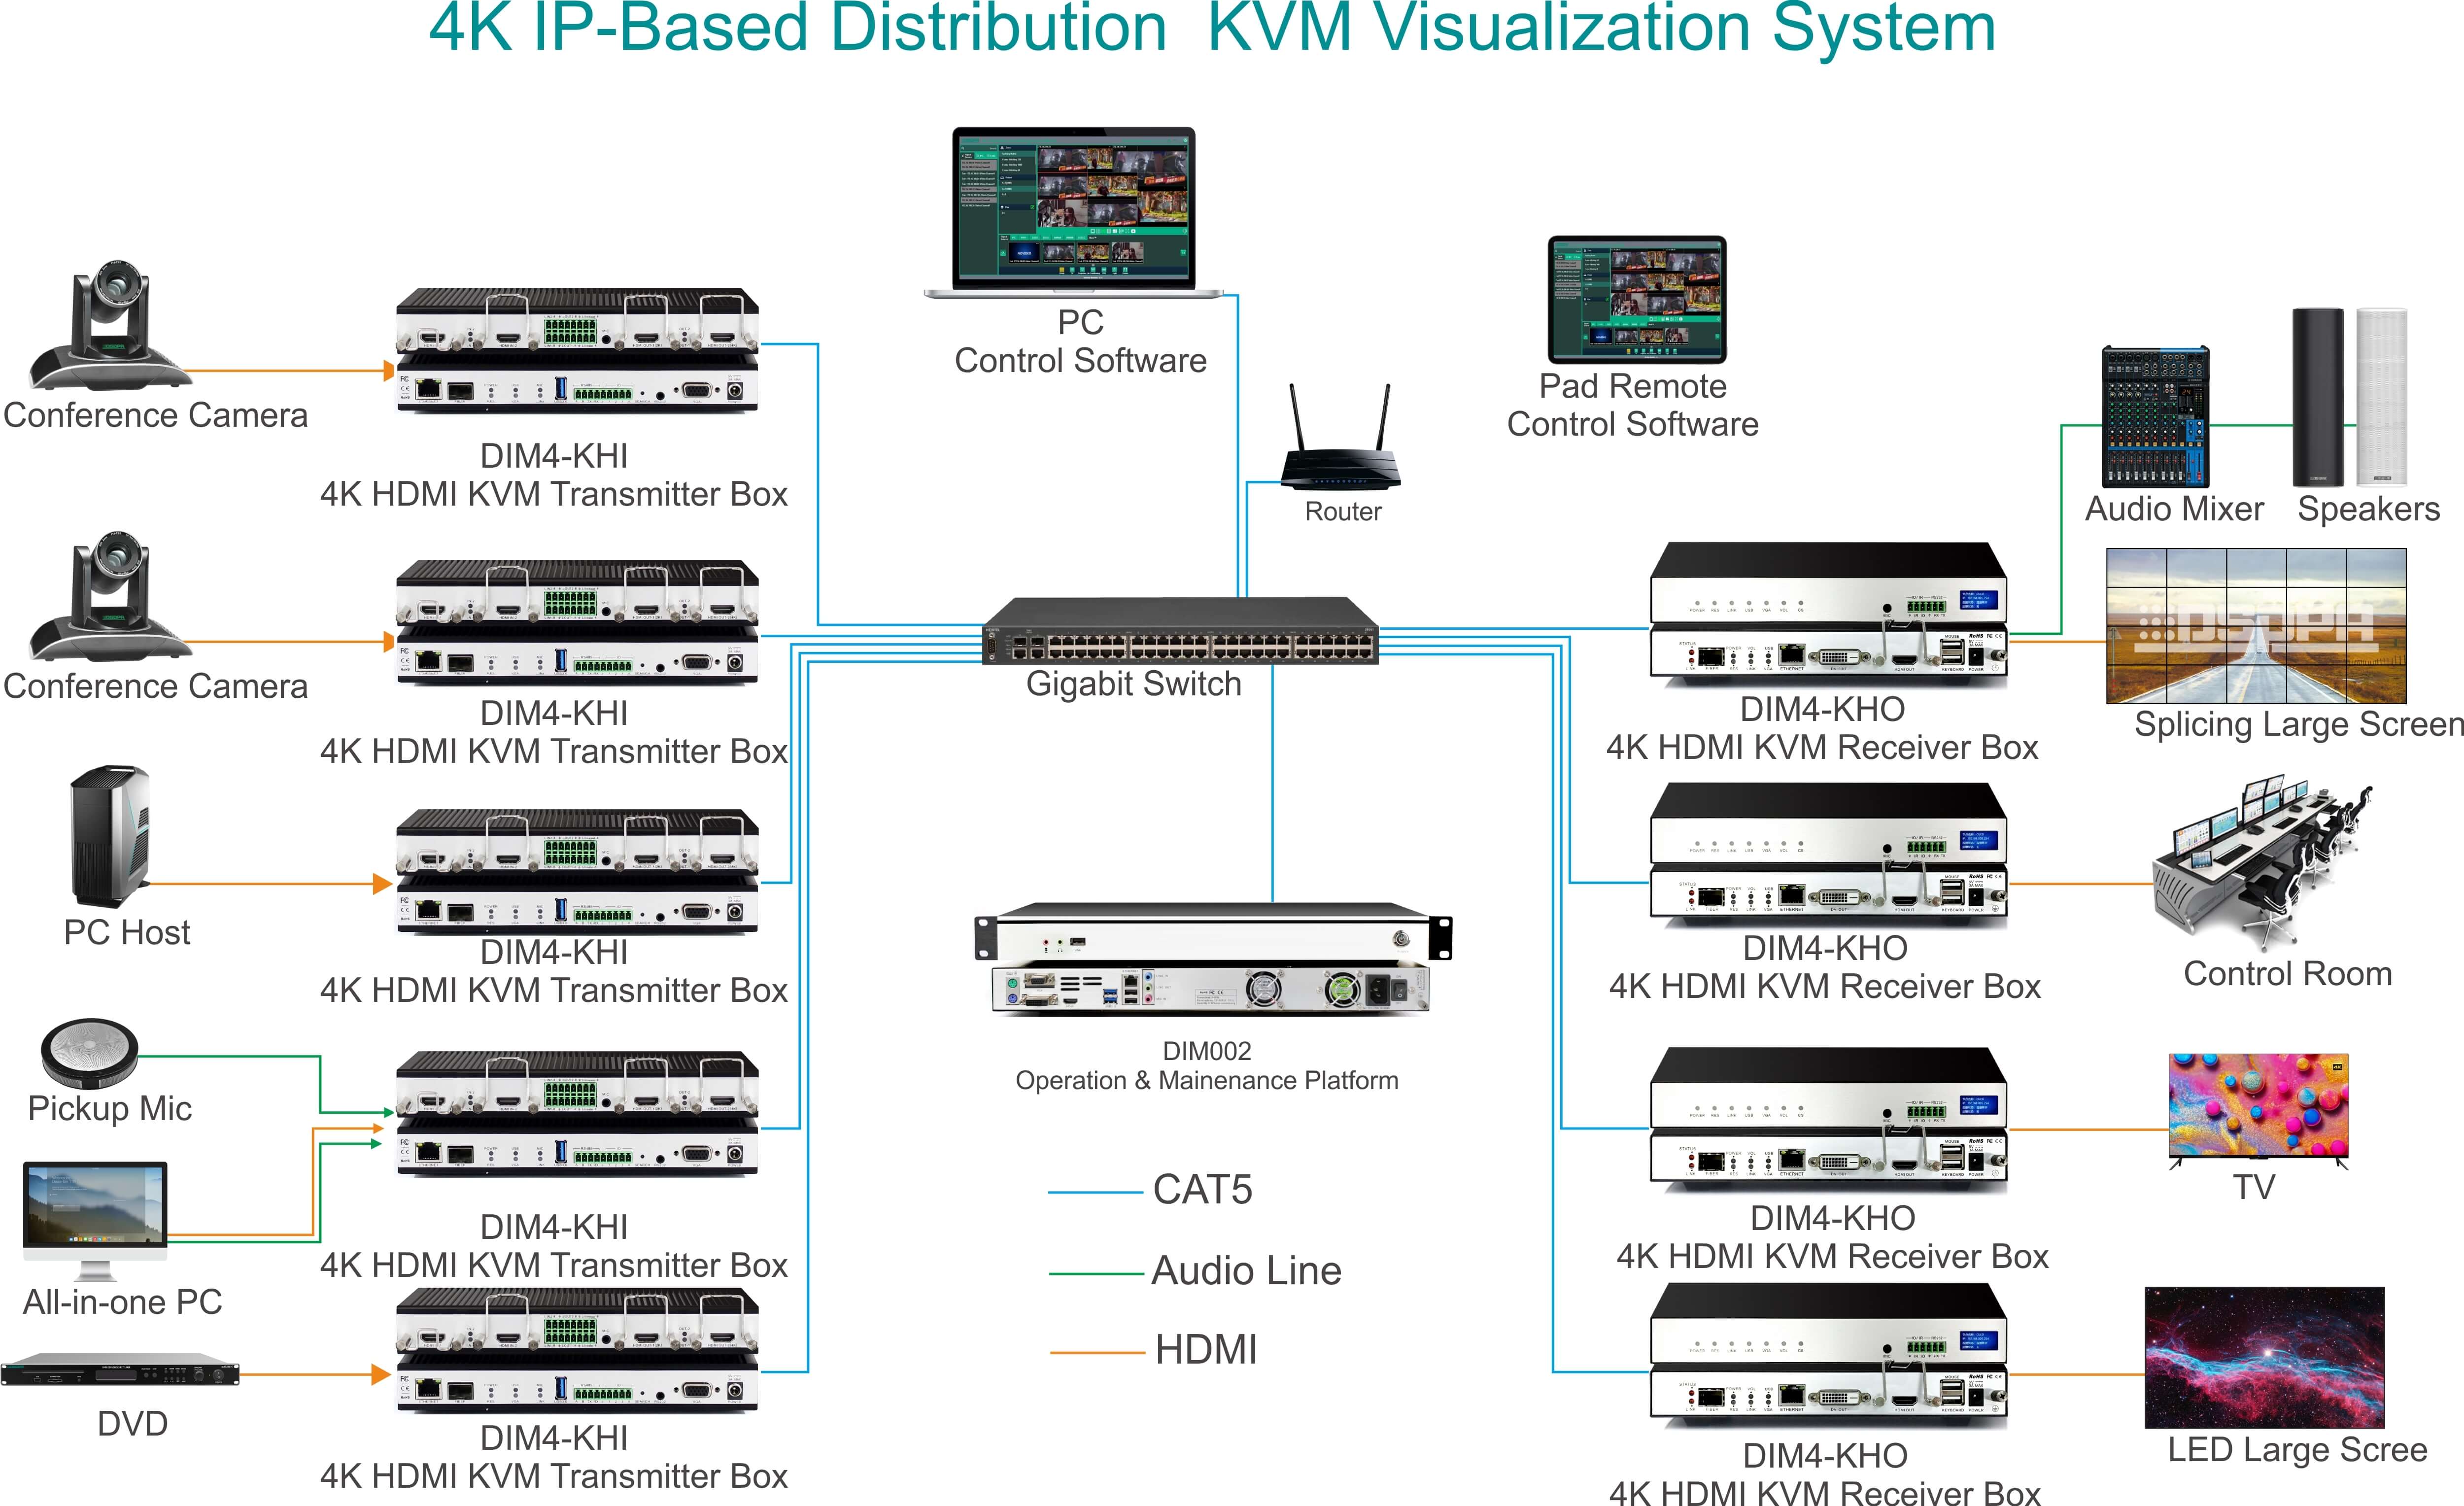 2K4K_Distributed_KVM_Management_System_Connection_Diagram_(1).jpeg